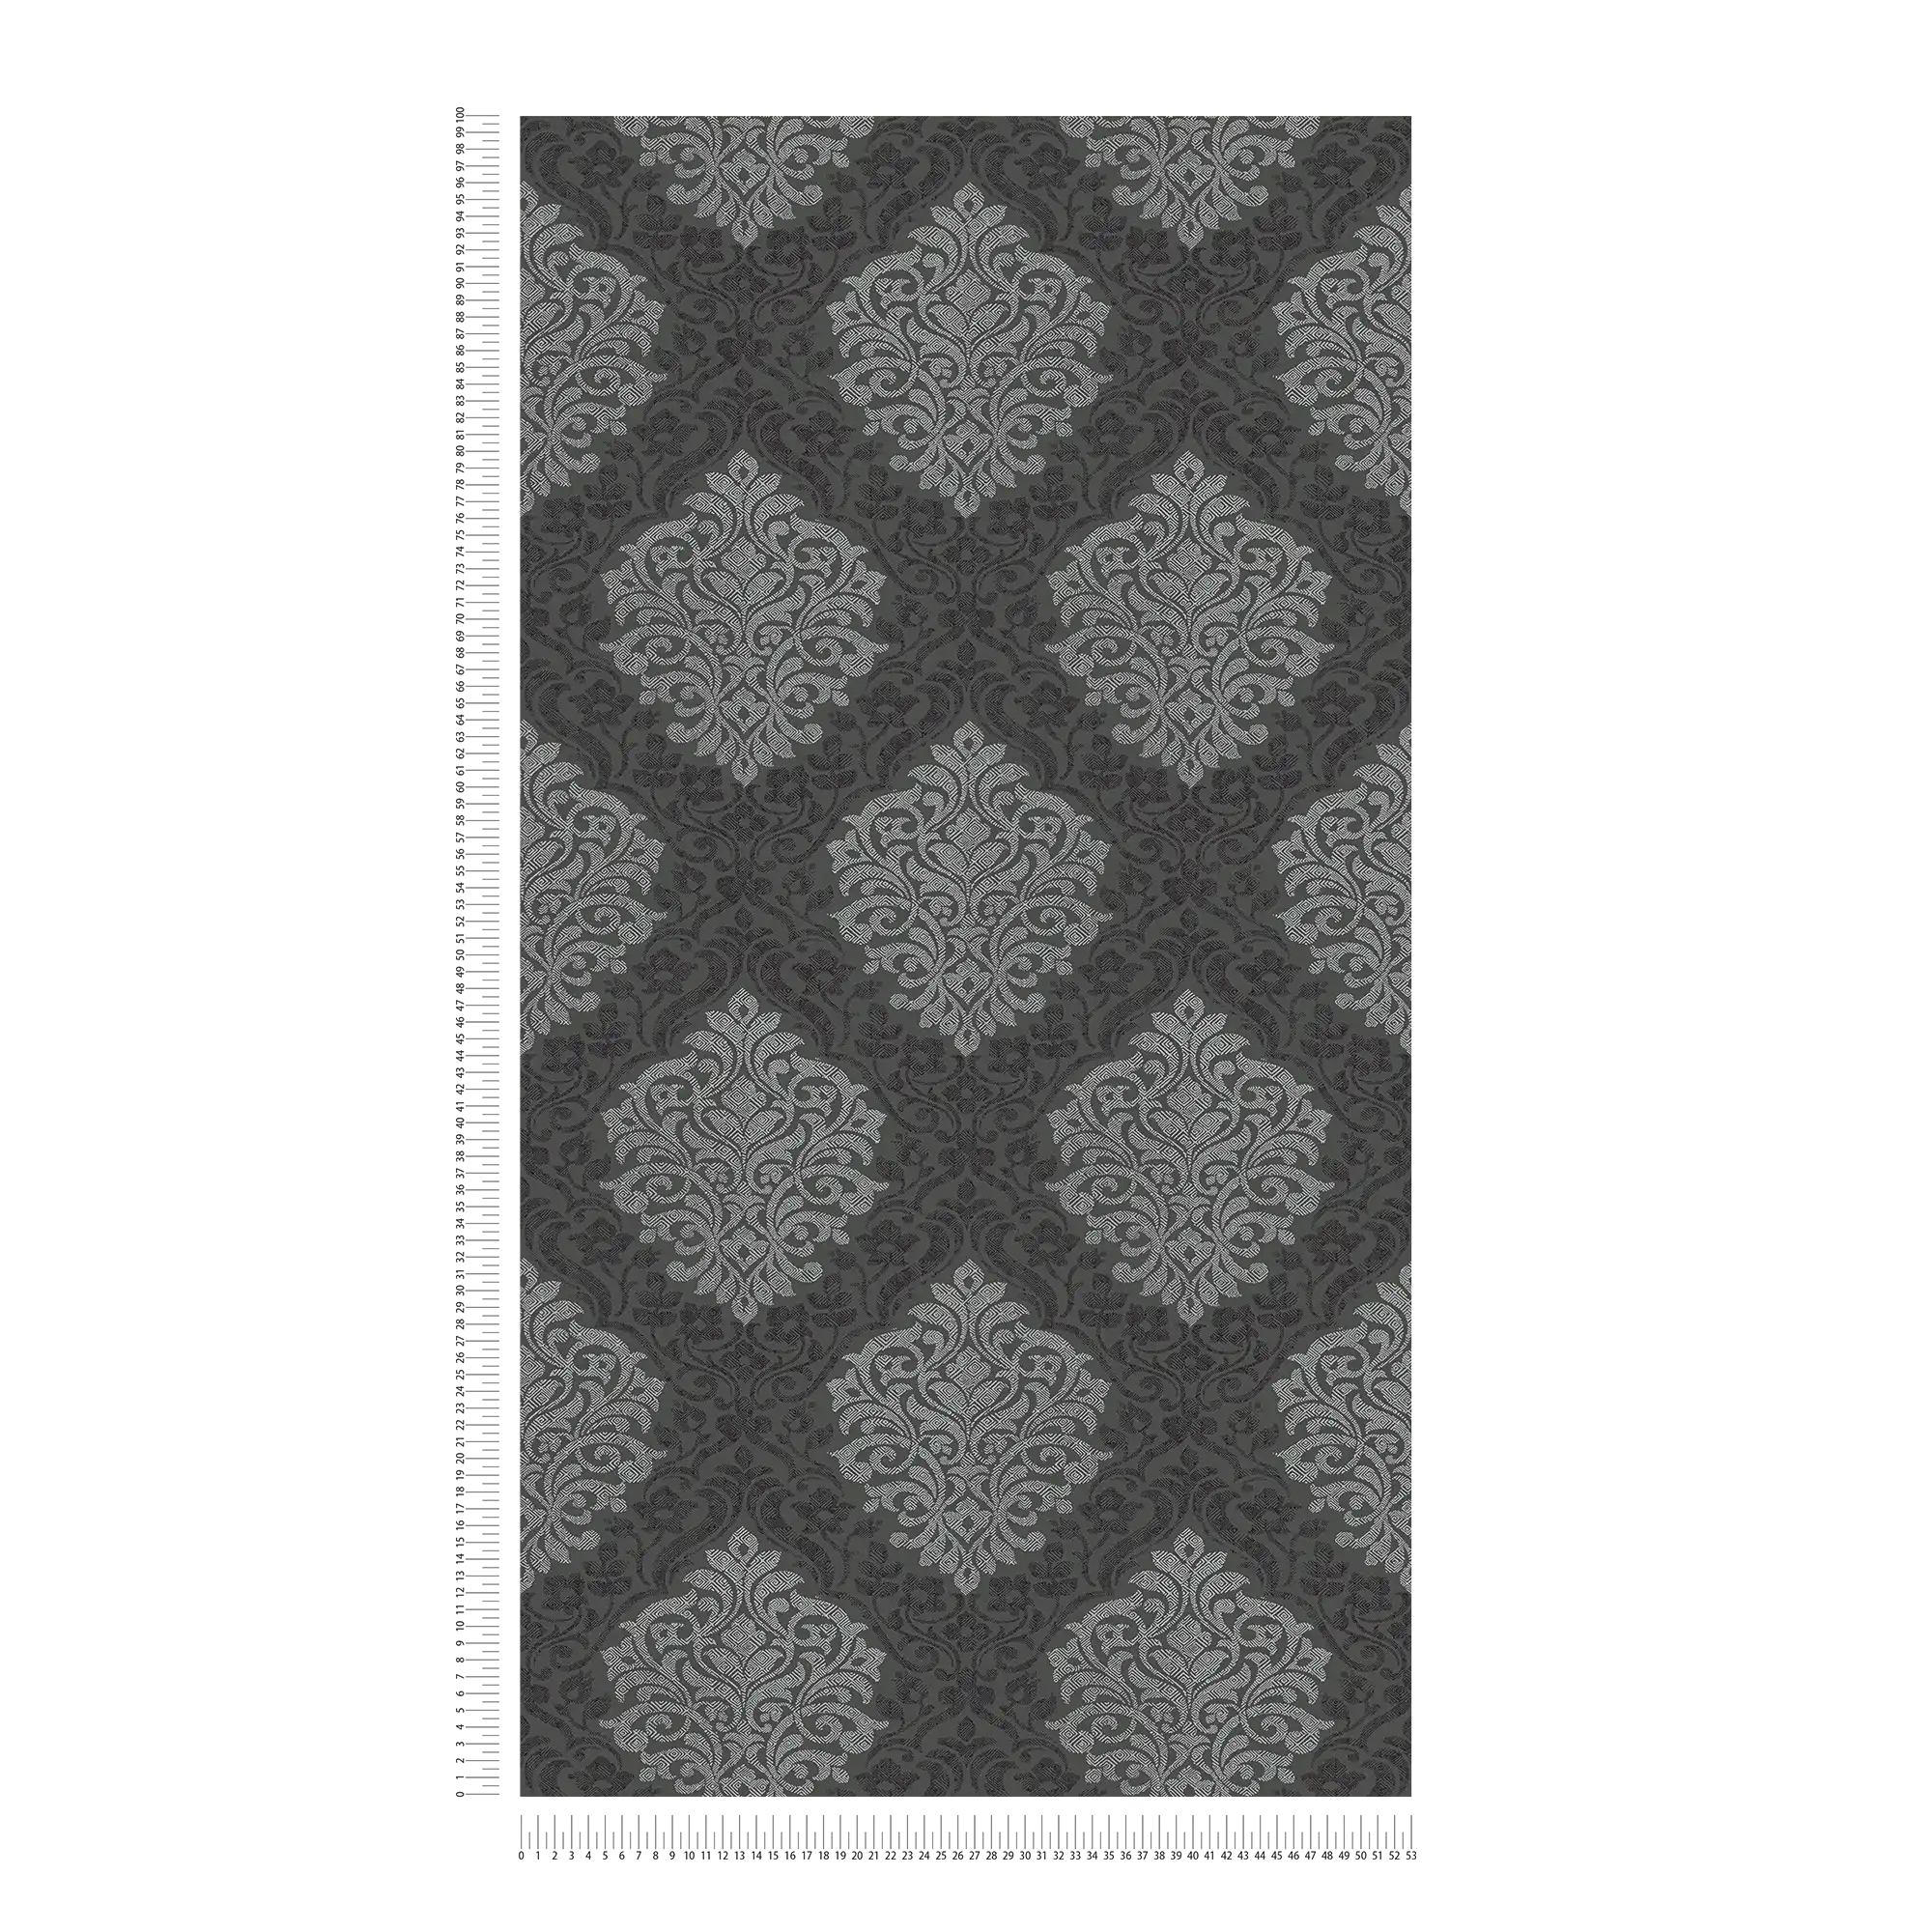             Papier peint floral ornemental motif losange style ethnique - argent, noir, gris
        